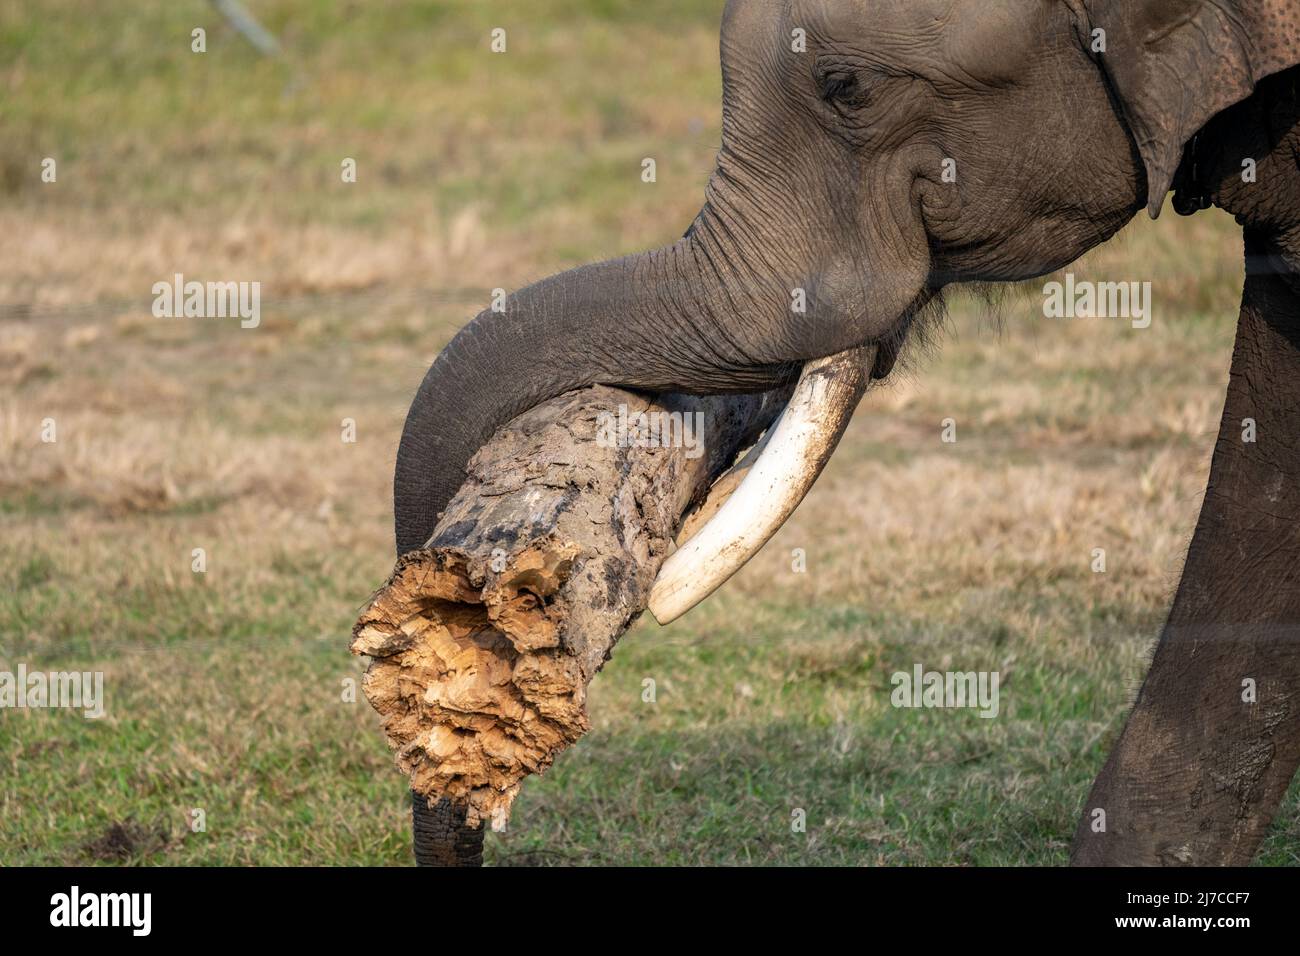 Eine Nahaufnahme eines Elefantenkopfes und Stoßzähne, während er einen Baumstamm mit seinem Rüssel trägt. Stockfoto